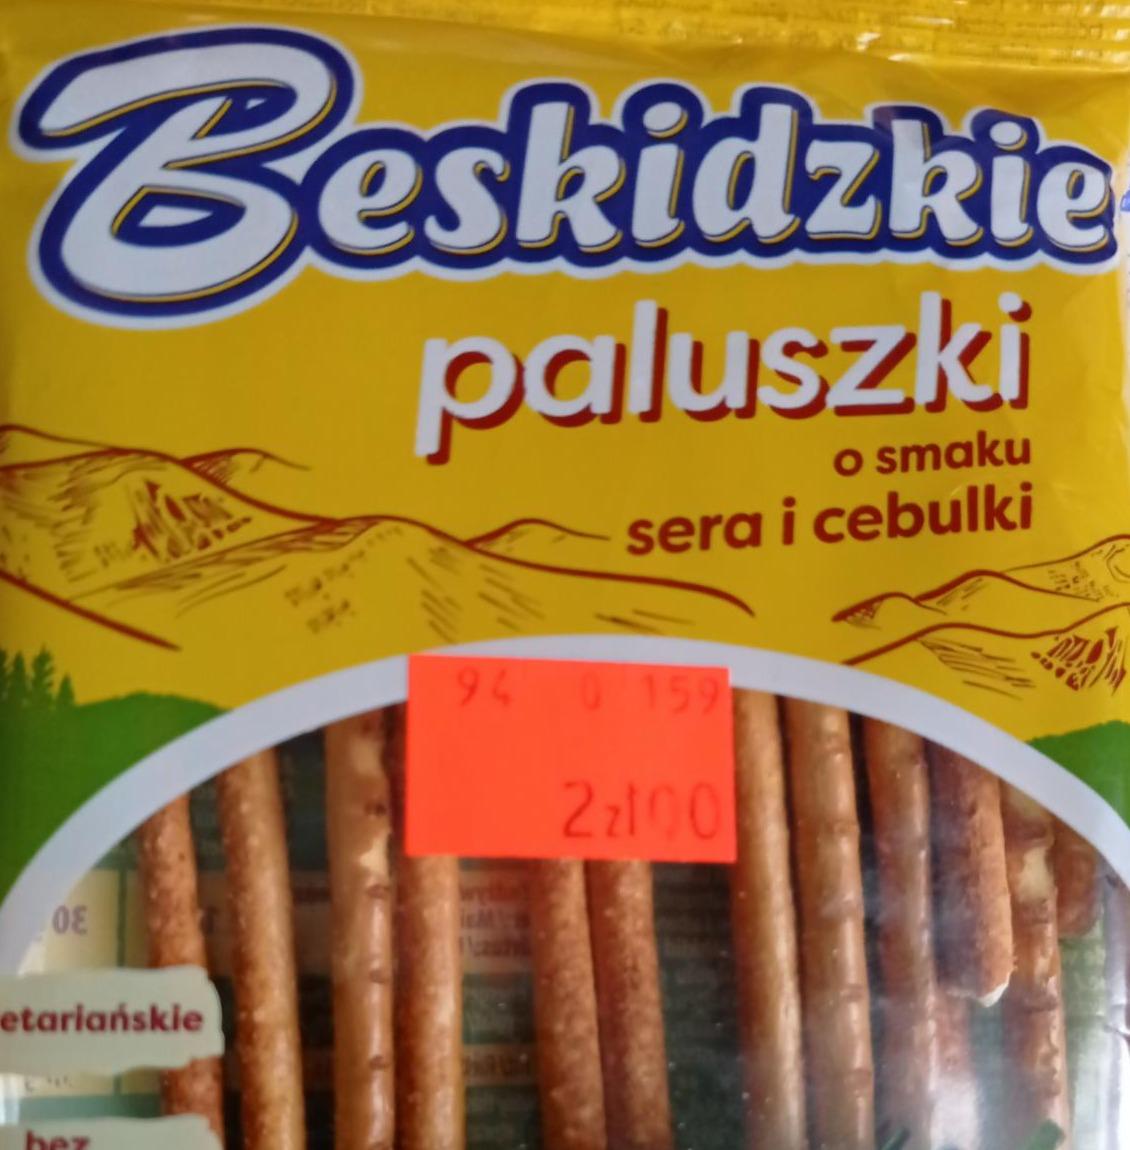 Fotografie - Beskidzkie Paluszki o smaku sera i cebulki